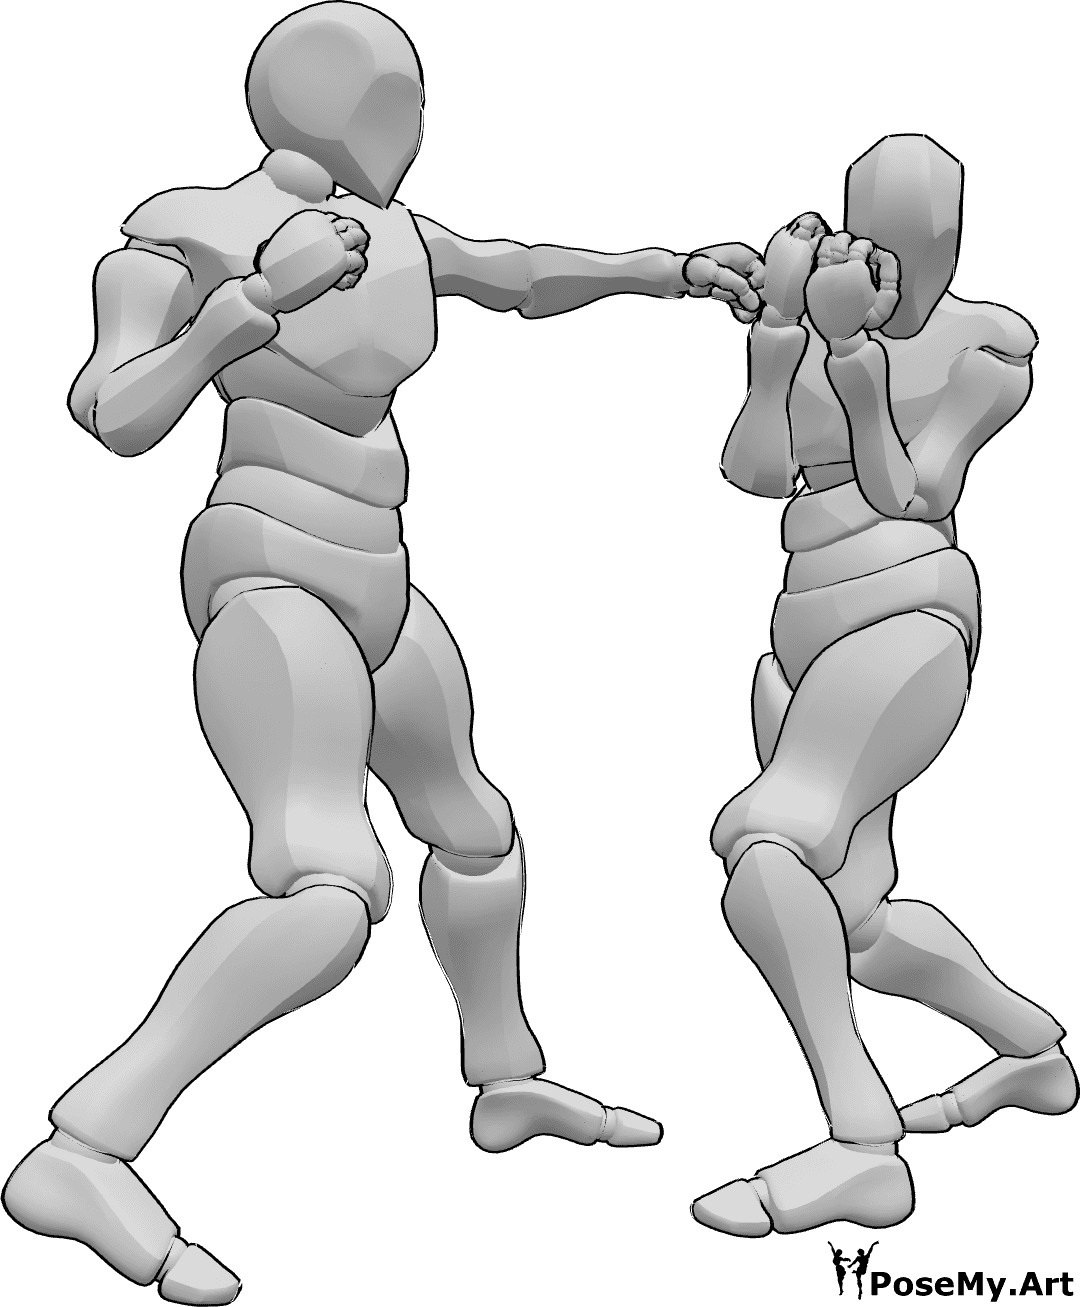 Riferimento alle pose- Posa del gancio sinistro da schivare - Due uomini stanno praticando la boxe, uno dei due lancia un gancio sinistro, l'altro schiva il colpo.